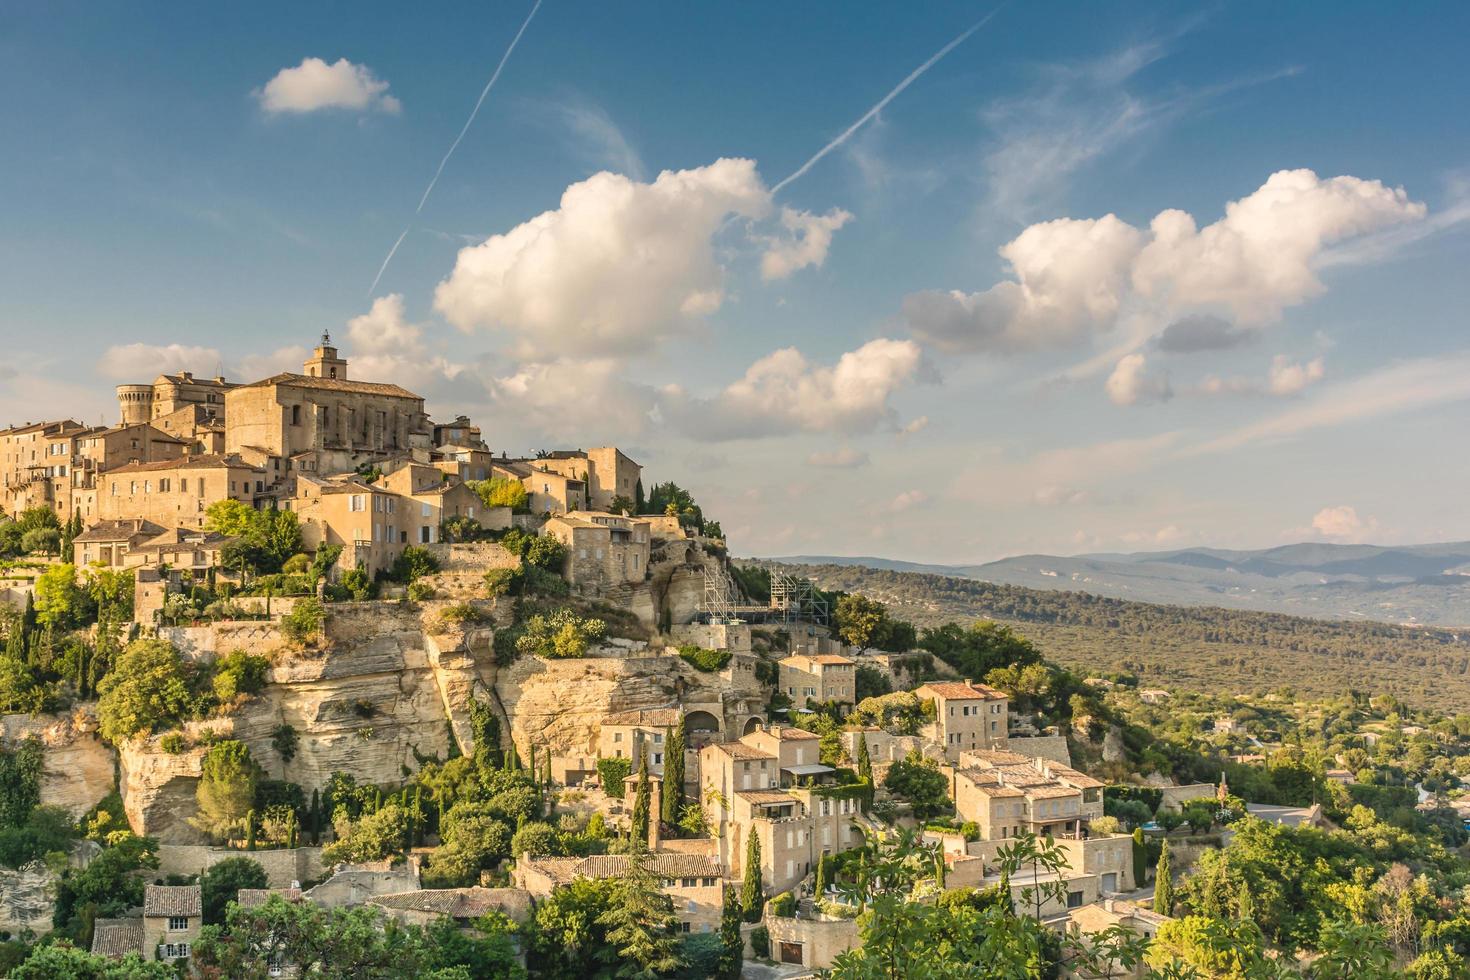 vue panoramique sur le village de gordes en provence, sud de la france contre ciel dramatique photo